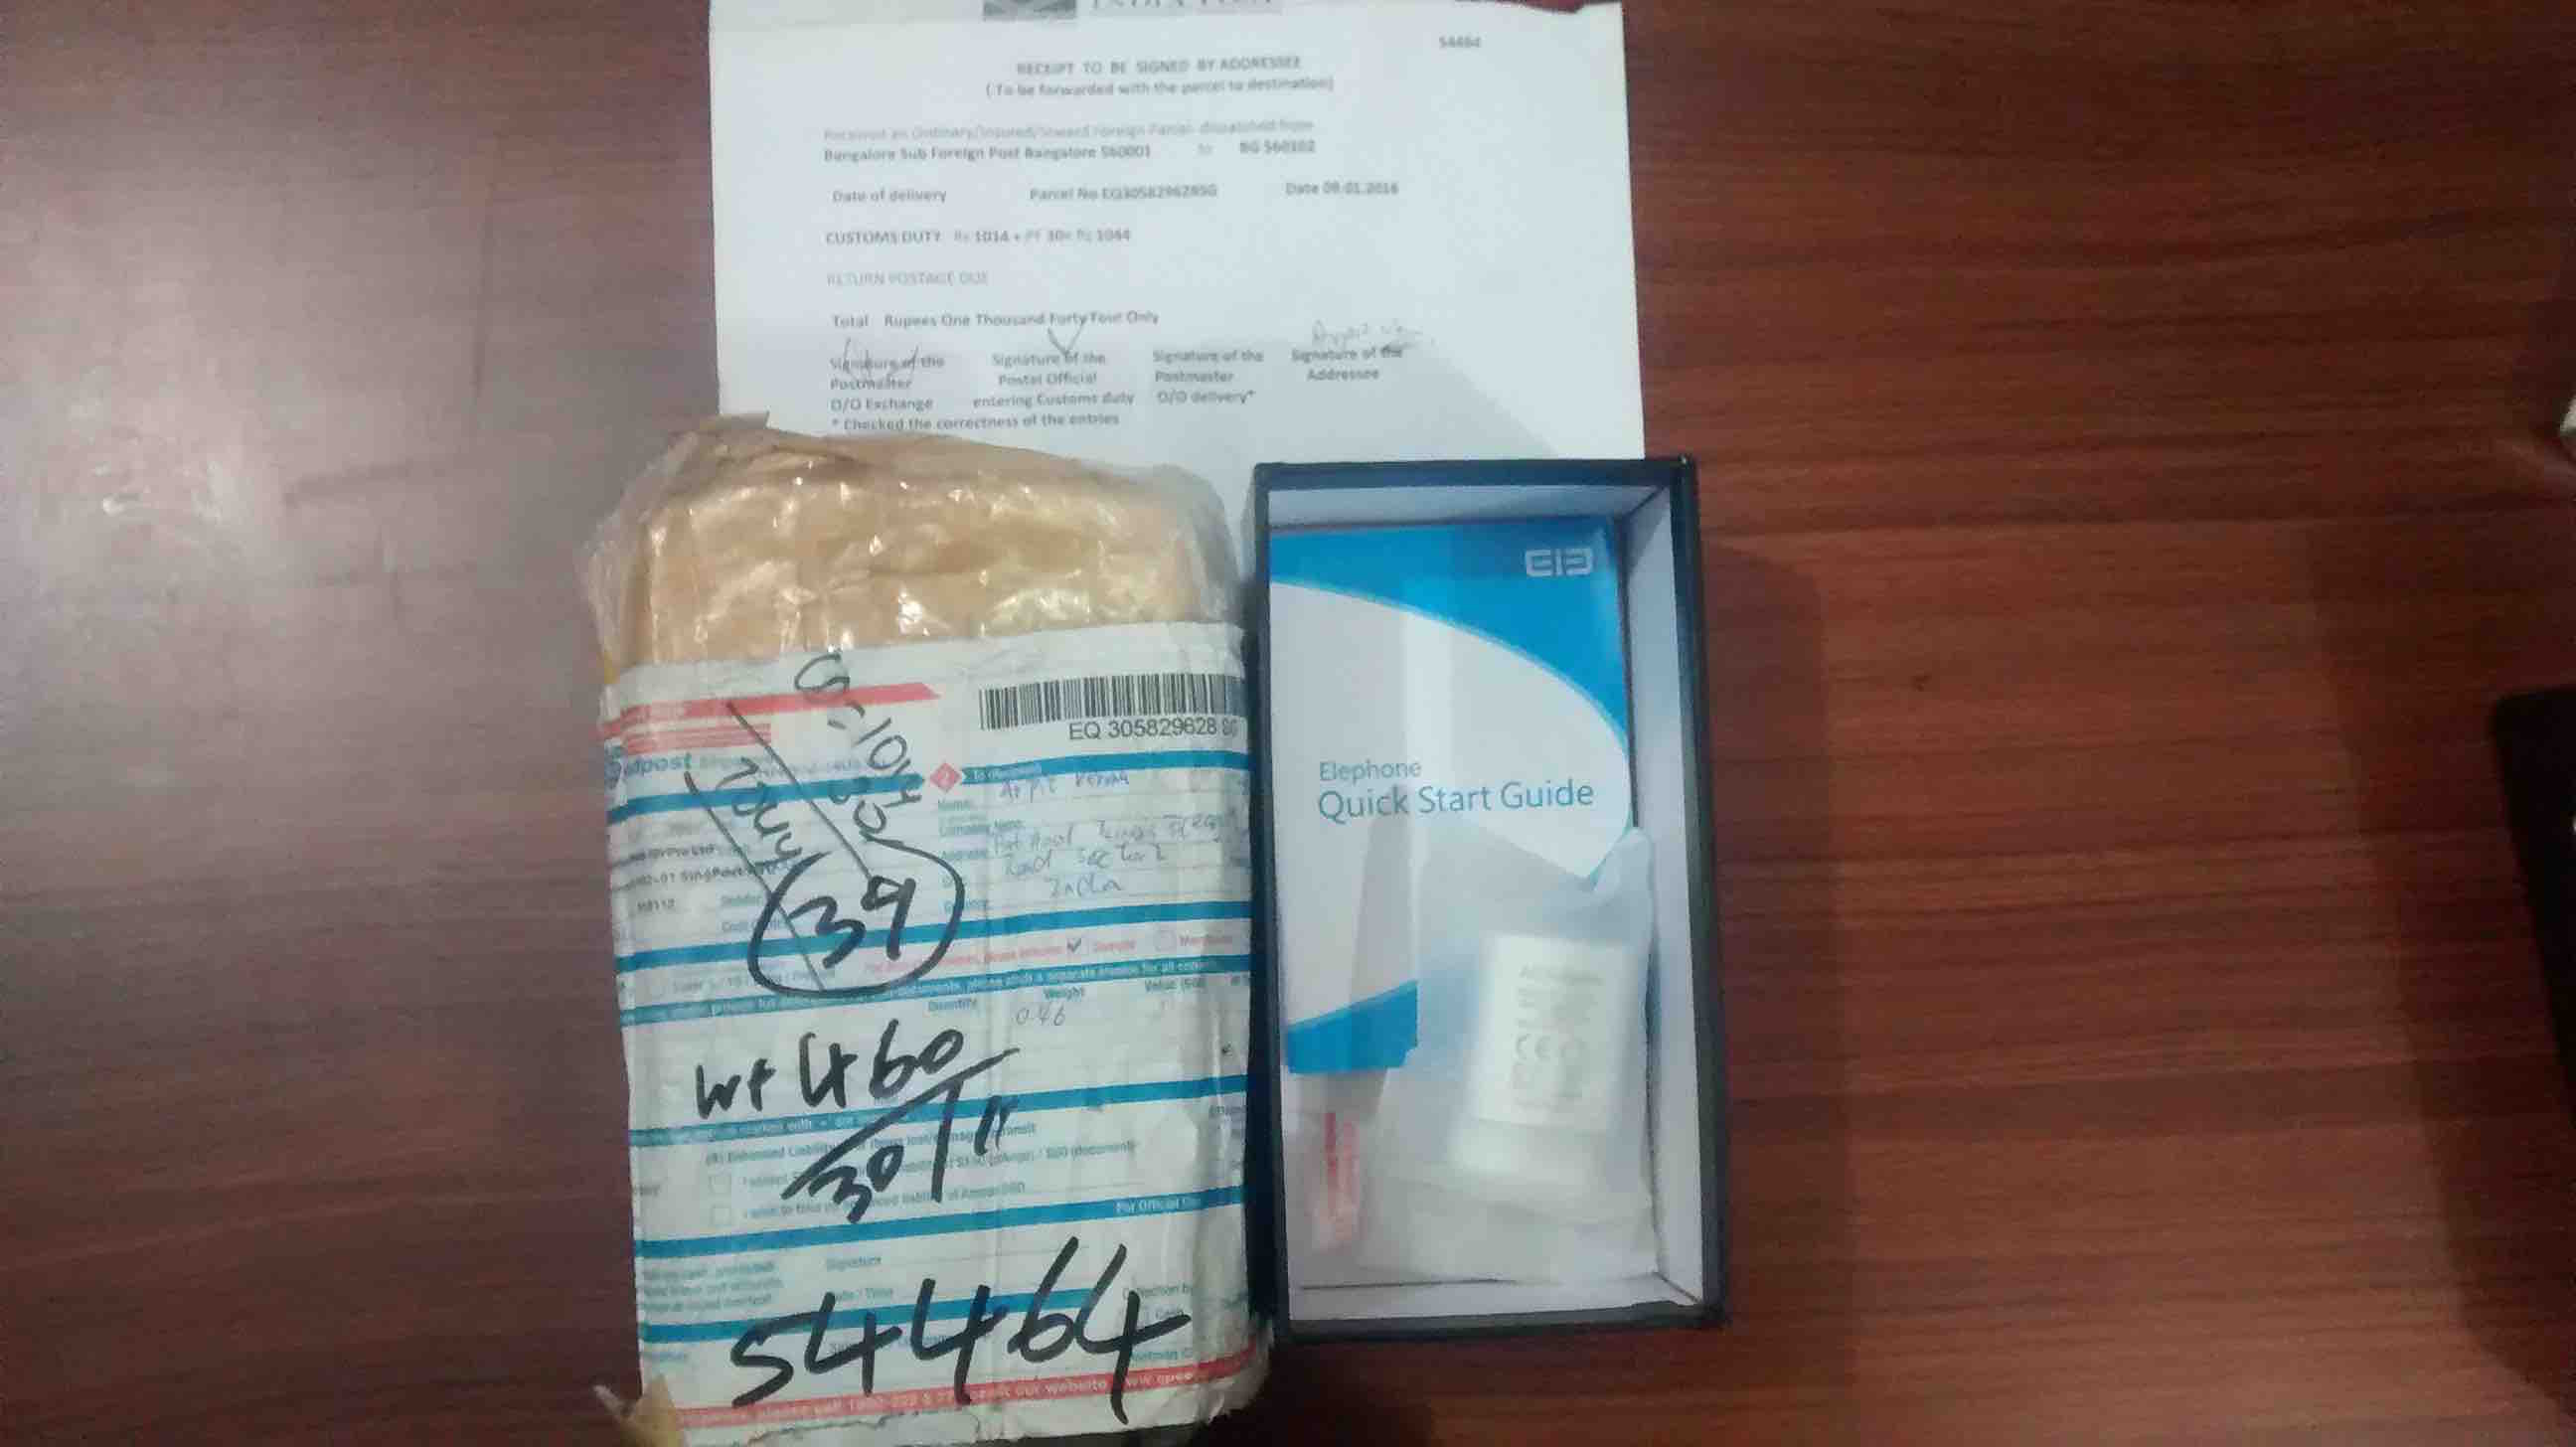 india post empty box stolen phone fossbytes